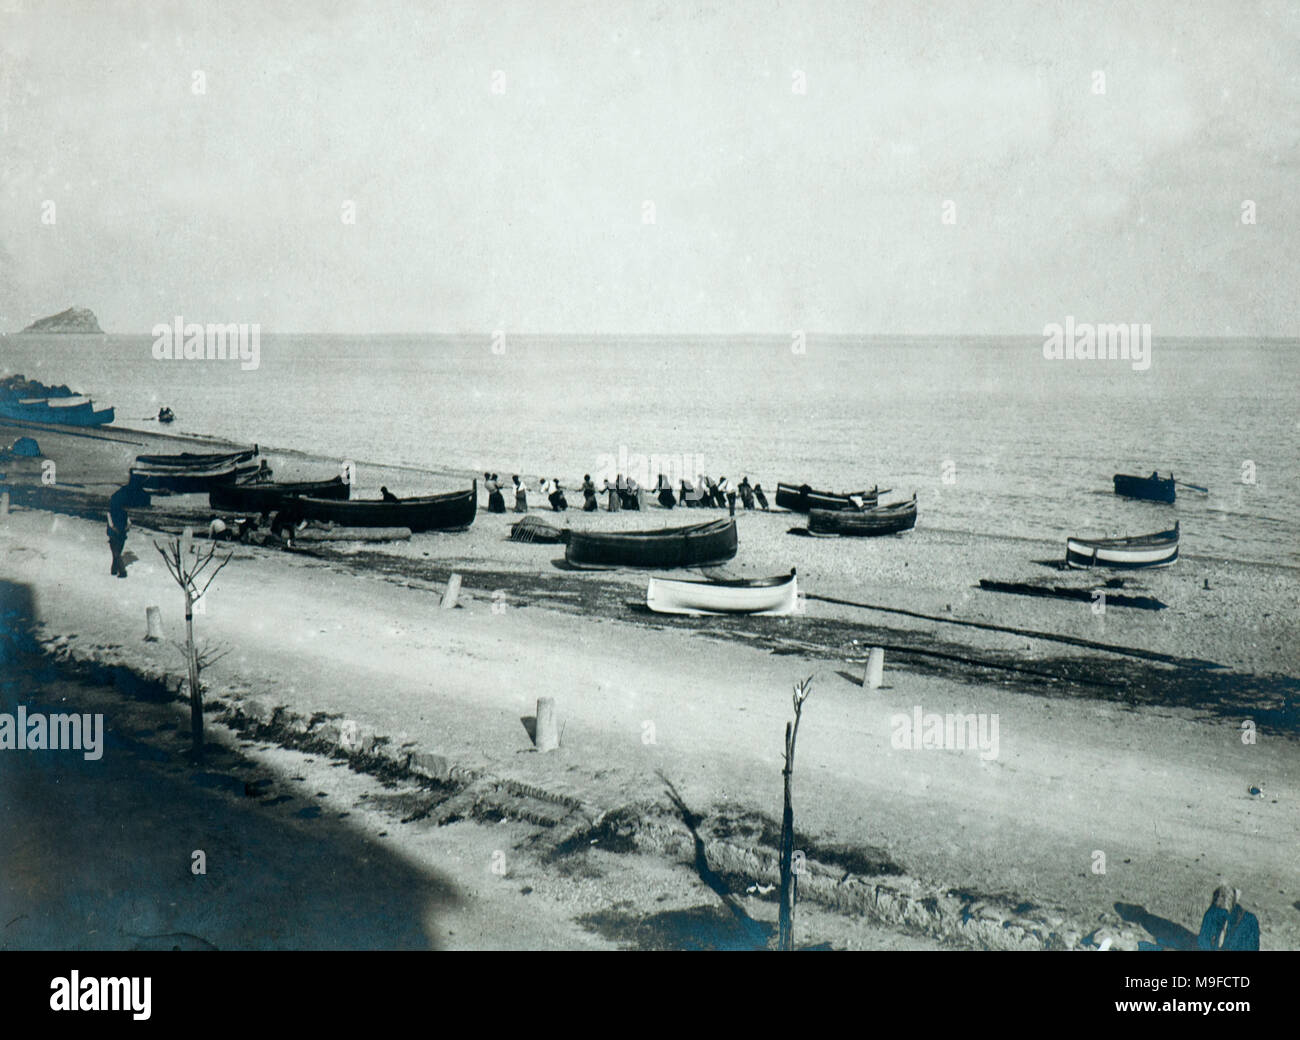 La foto mostra le attività di pesca lungo la costa lugurian negli anni venti (sulla sinistra isola Gallinara) Foto Stock